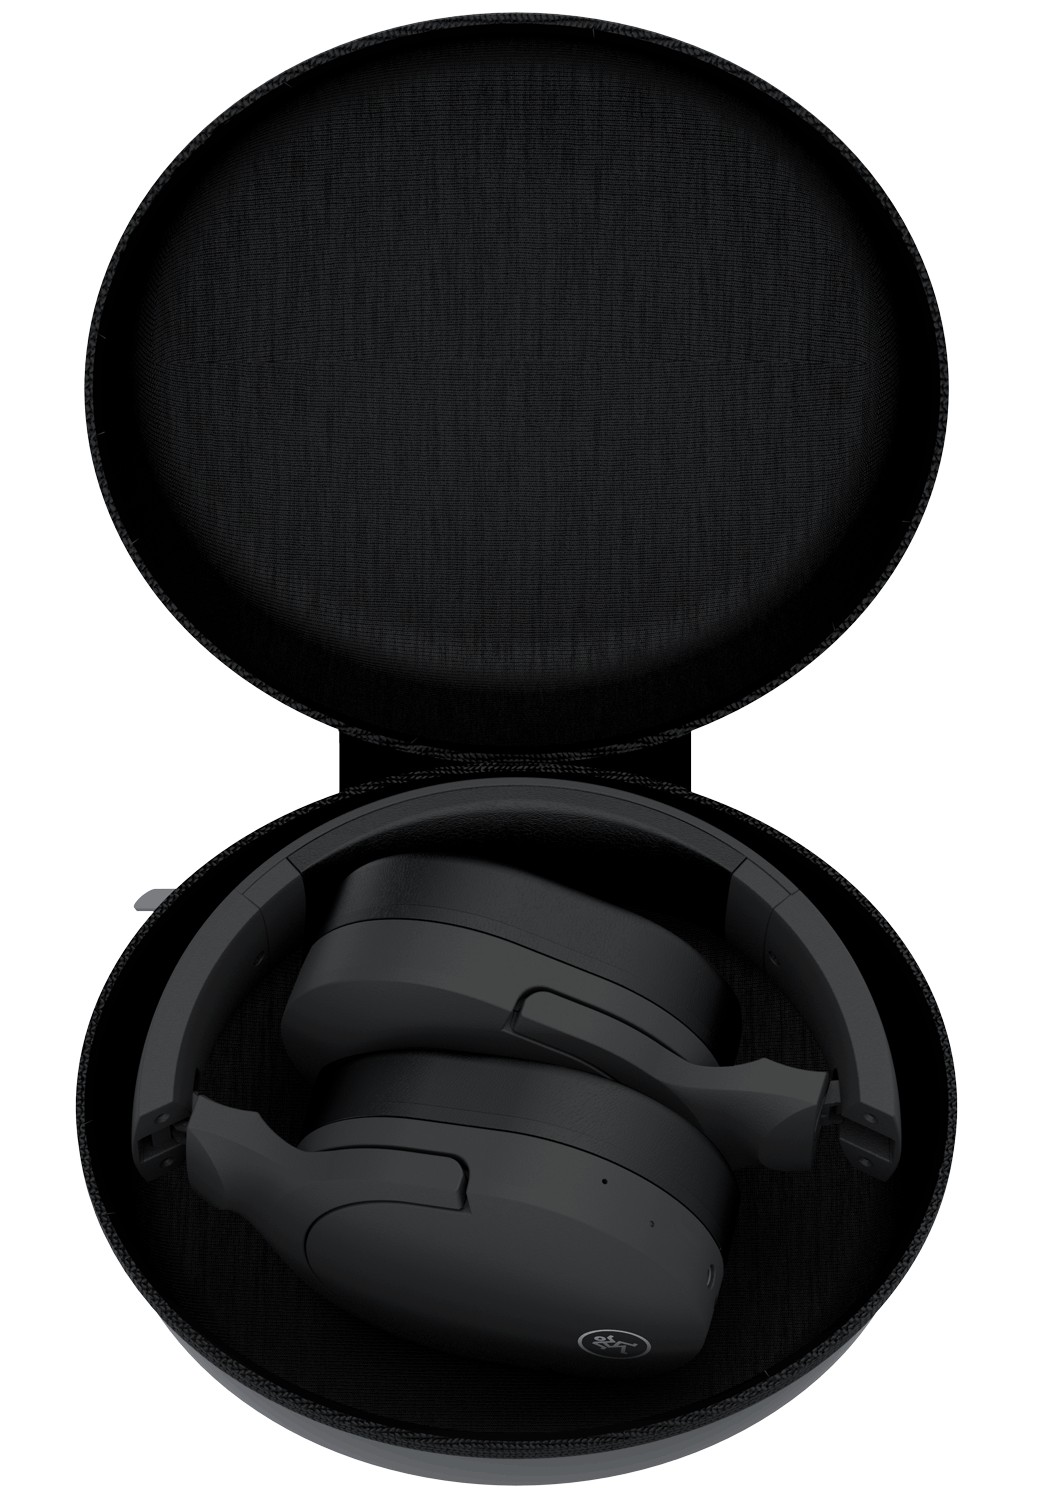 Produktvorstellung Neuer Wireless-Kopfhörer von Mackie - News, Bild 3